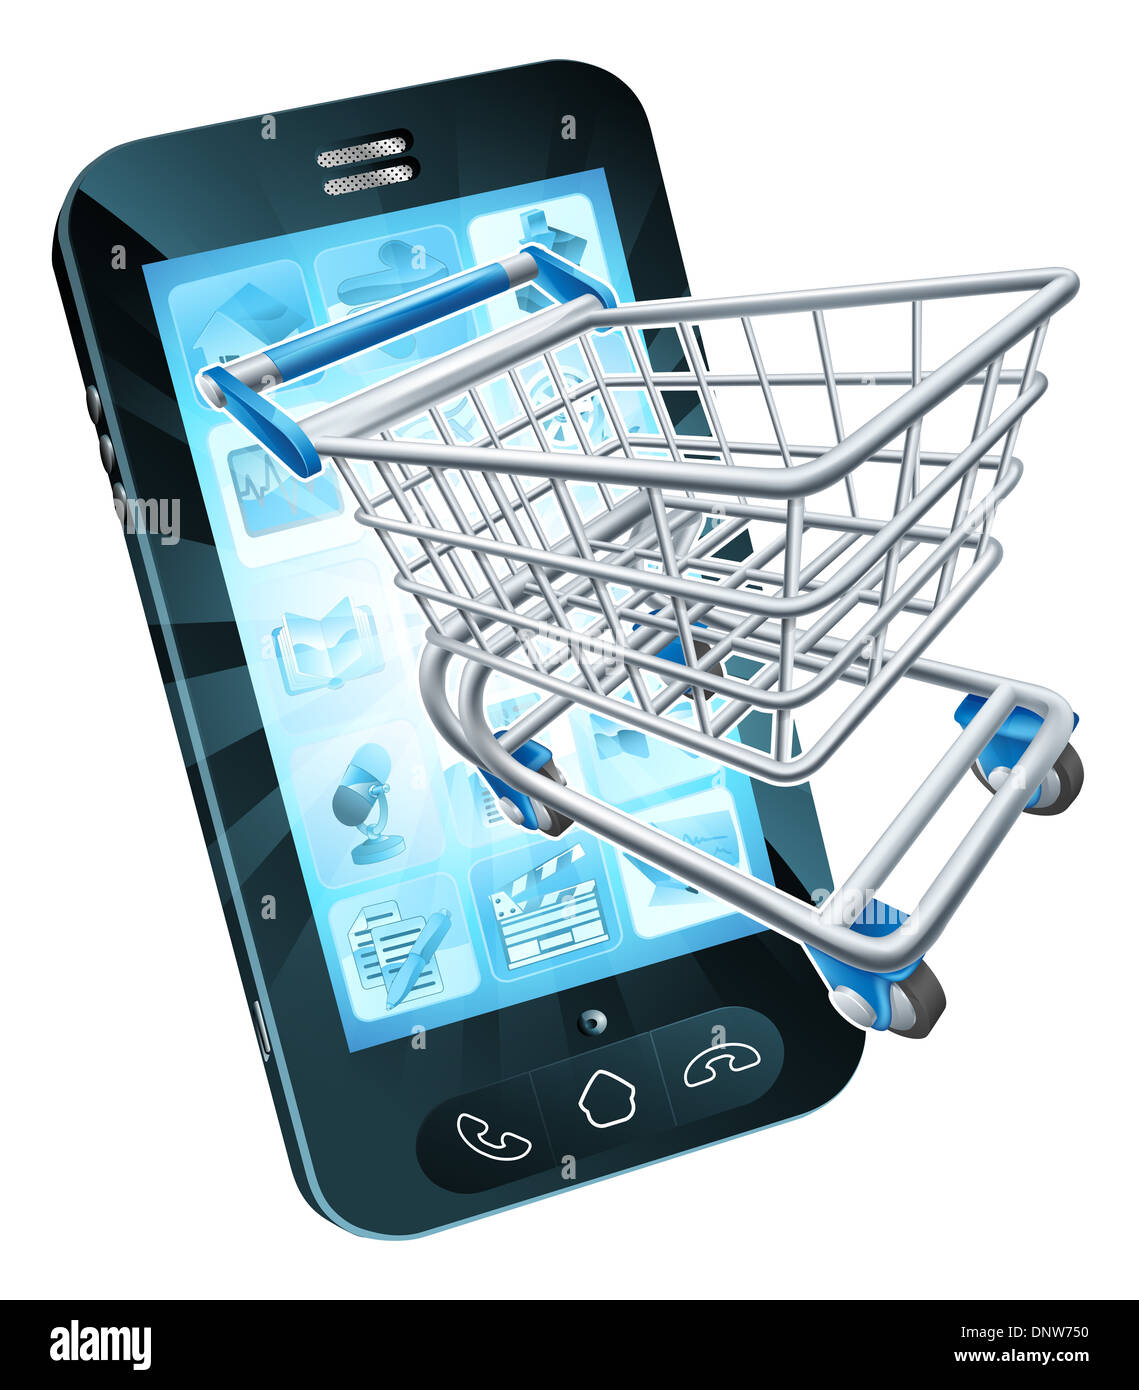 Téléphone mobile avec panier flying out, concept pour le shopping en ligne ou pour les applications ou téléphone mobile Banque D'Images